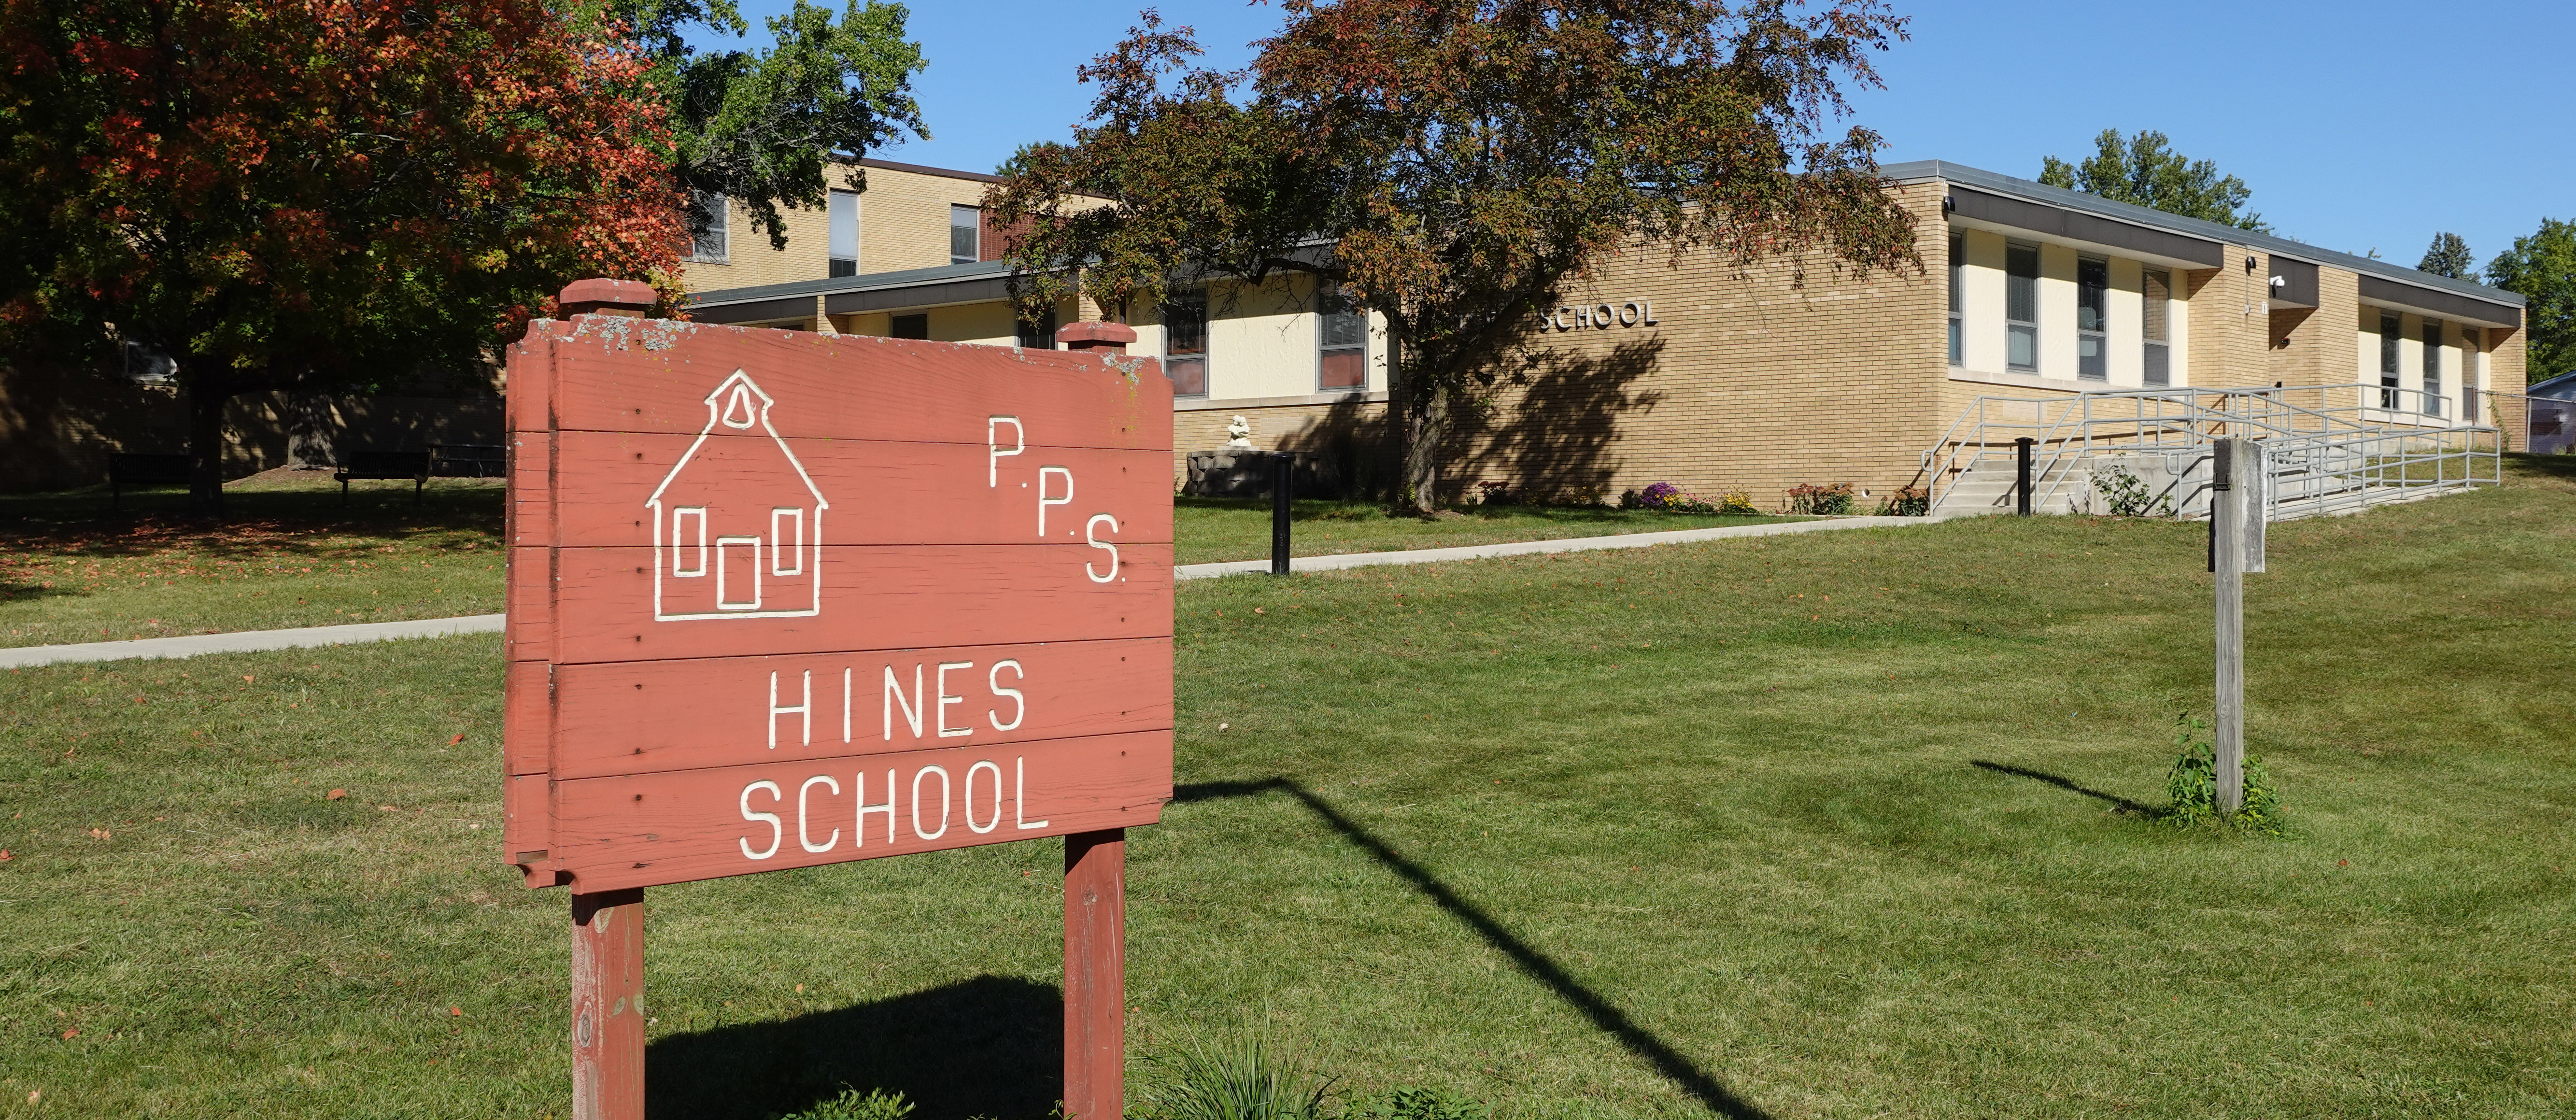 front of hines school building